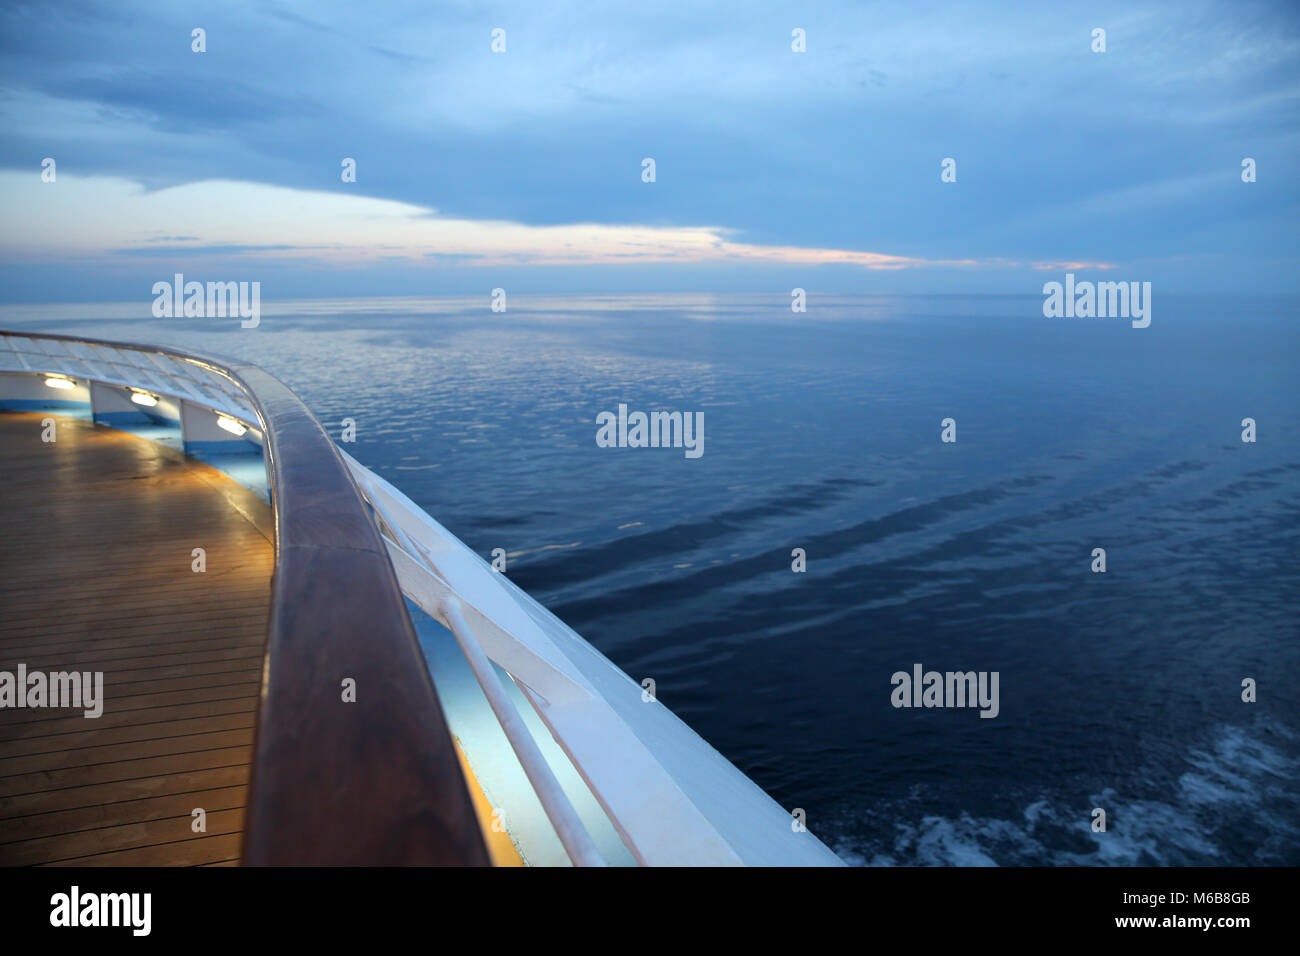 Twlight over a cruise ship deck, sailing across the calm ocean. Stock Photo